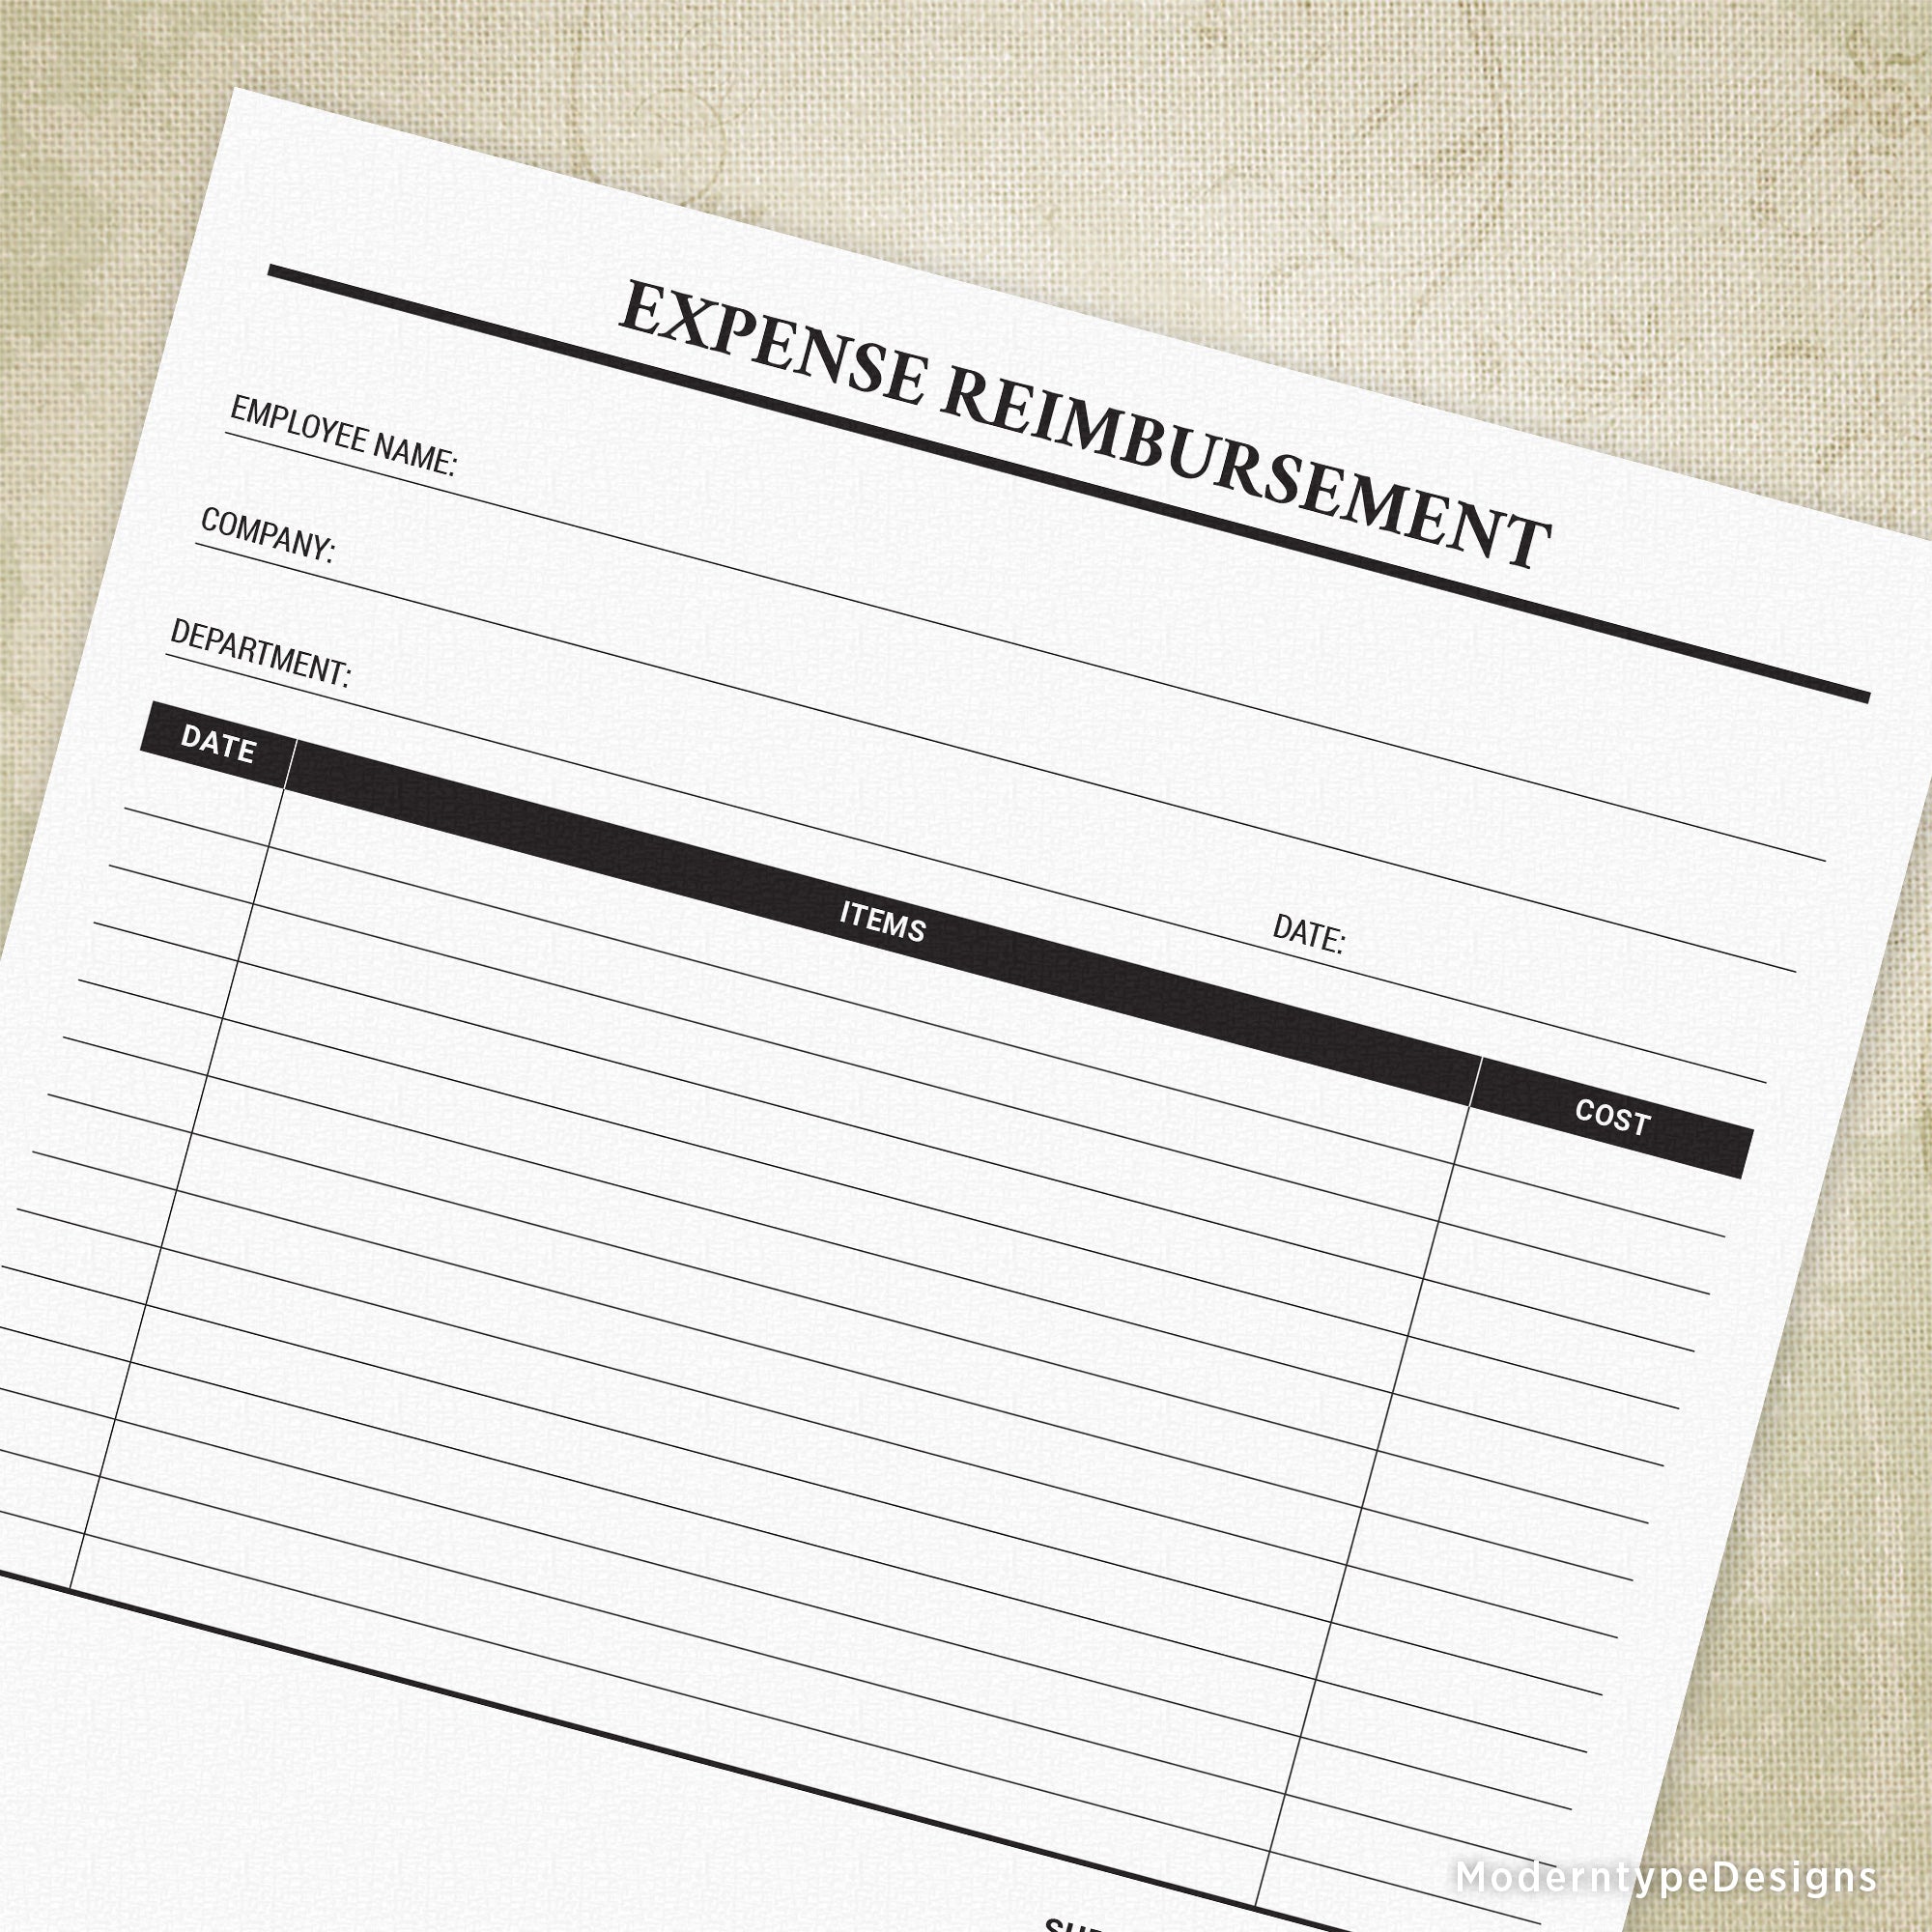 Expense Reimbursement Printable Form, #2